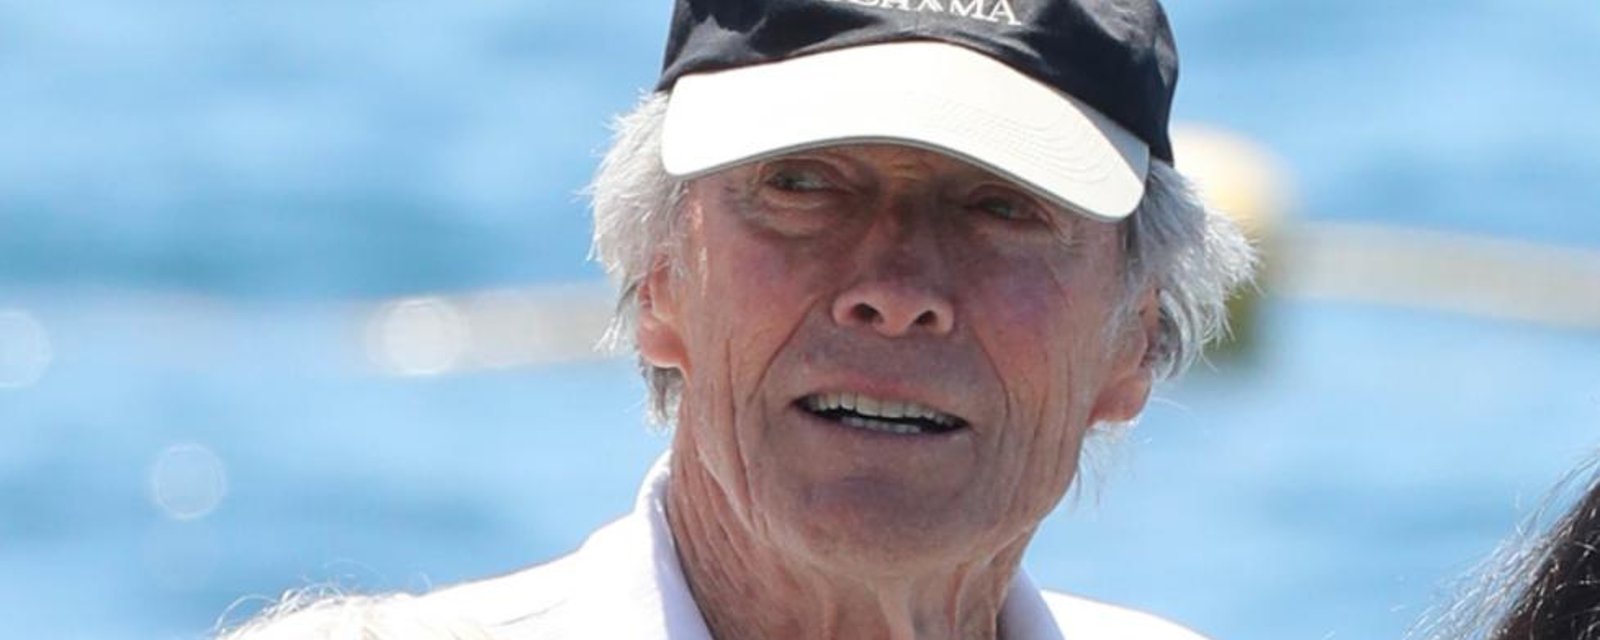 Une rumeur court sur la supposée mort de Clint Eastwood